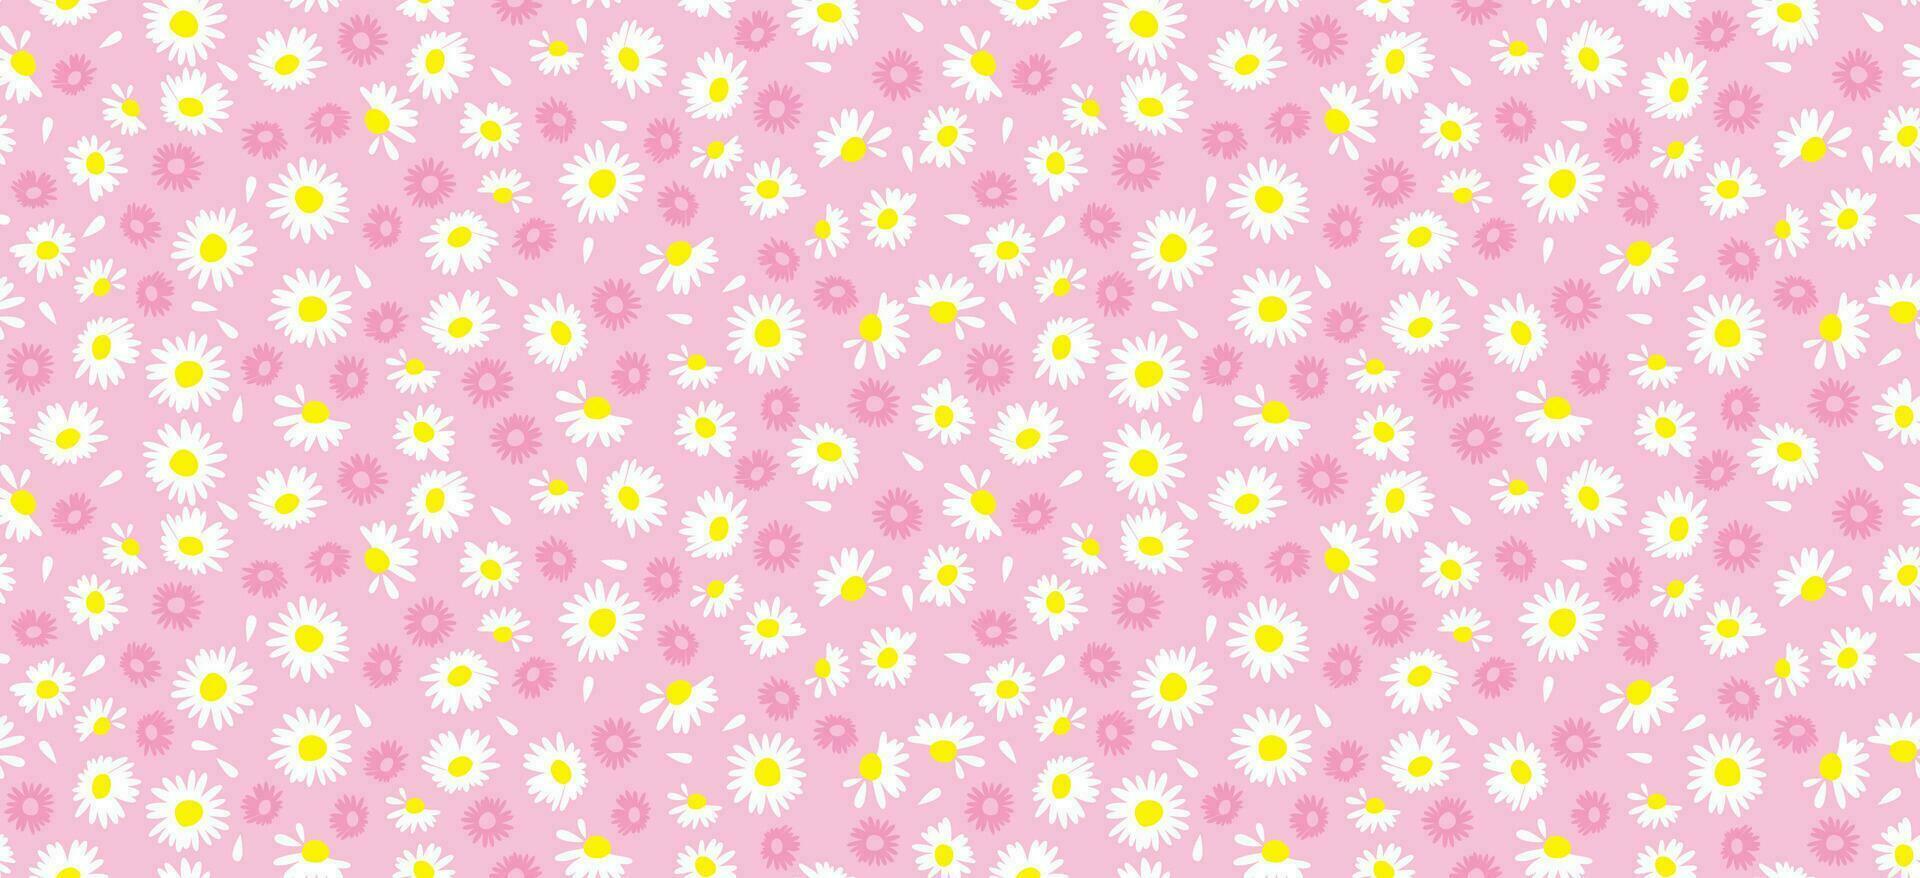 Gänseblümchen Blume Muster. schön Weiß Blume Hintergrund. Blumen- blühen Gänseblümchen. Frühling Weiß Blume Design Vektor. Gänseblümchen auf ein Licht Rosa Hintergrund. Vektor Design zum Stoff, wickeln Papier, drucken Karte.